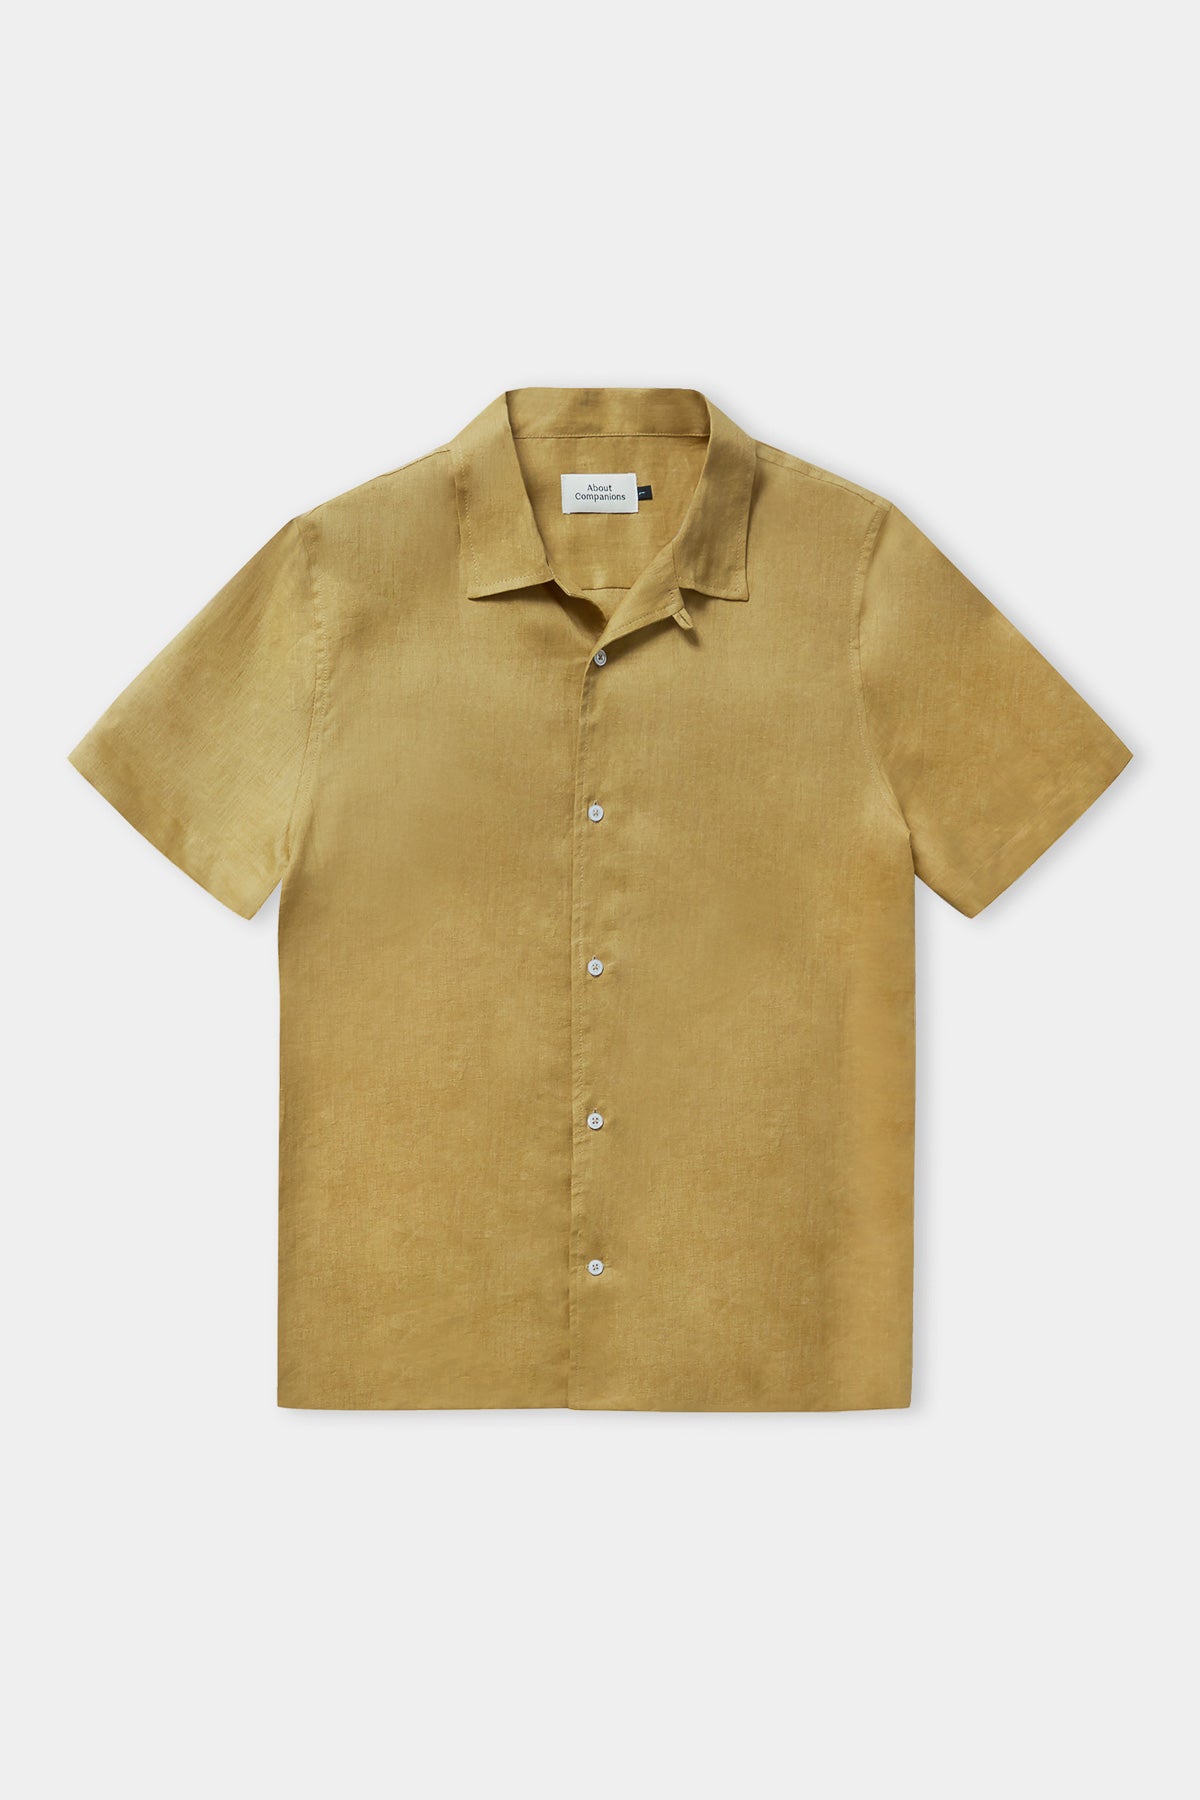 KUNO shirt golden pure linen